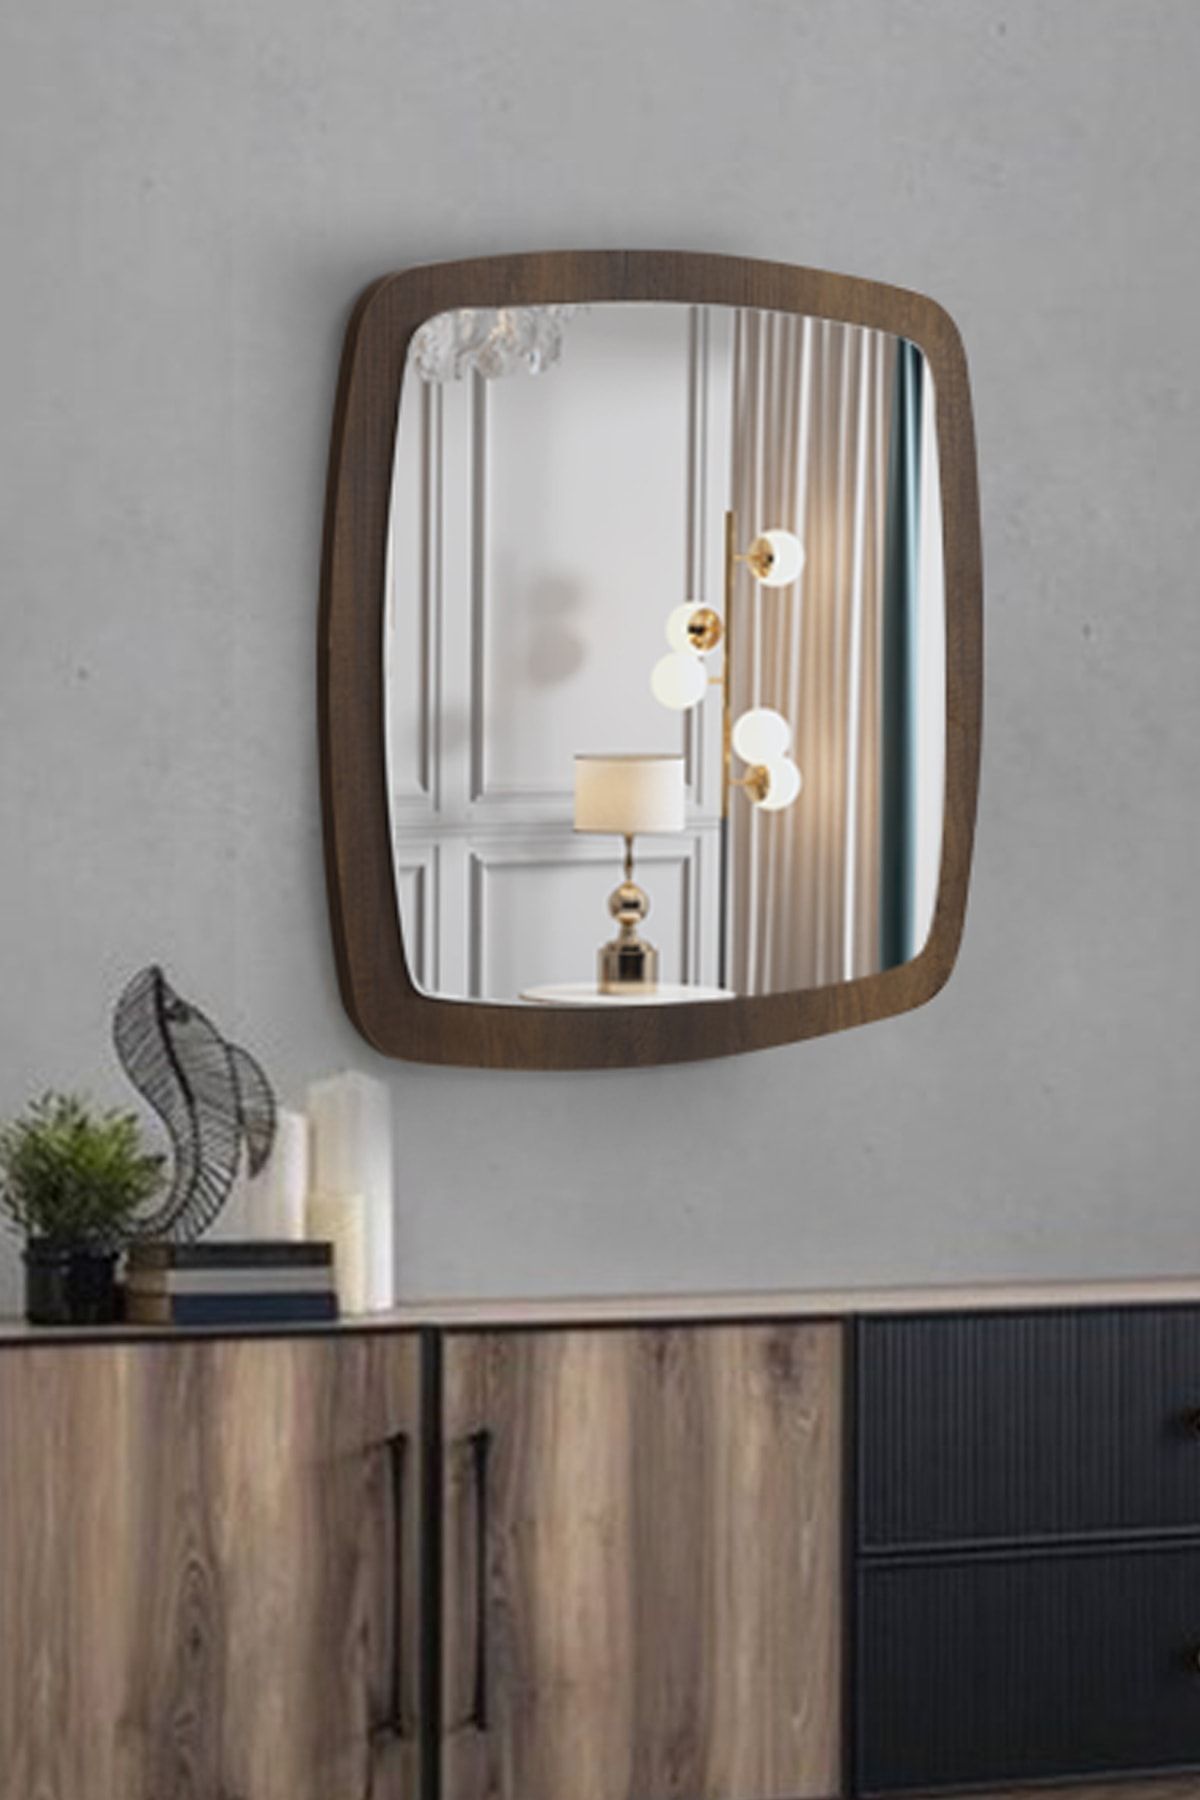 FAYMEND Ceviz Dekoratif Antre Hol Koridor Duvar Salon Mutfak Banyo Wc Ofis Aynası 45cm